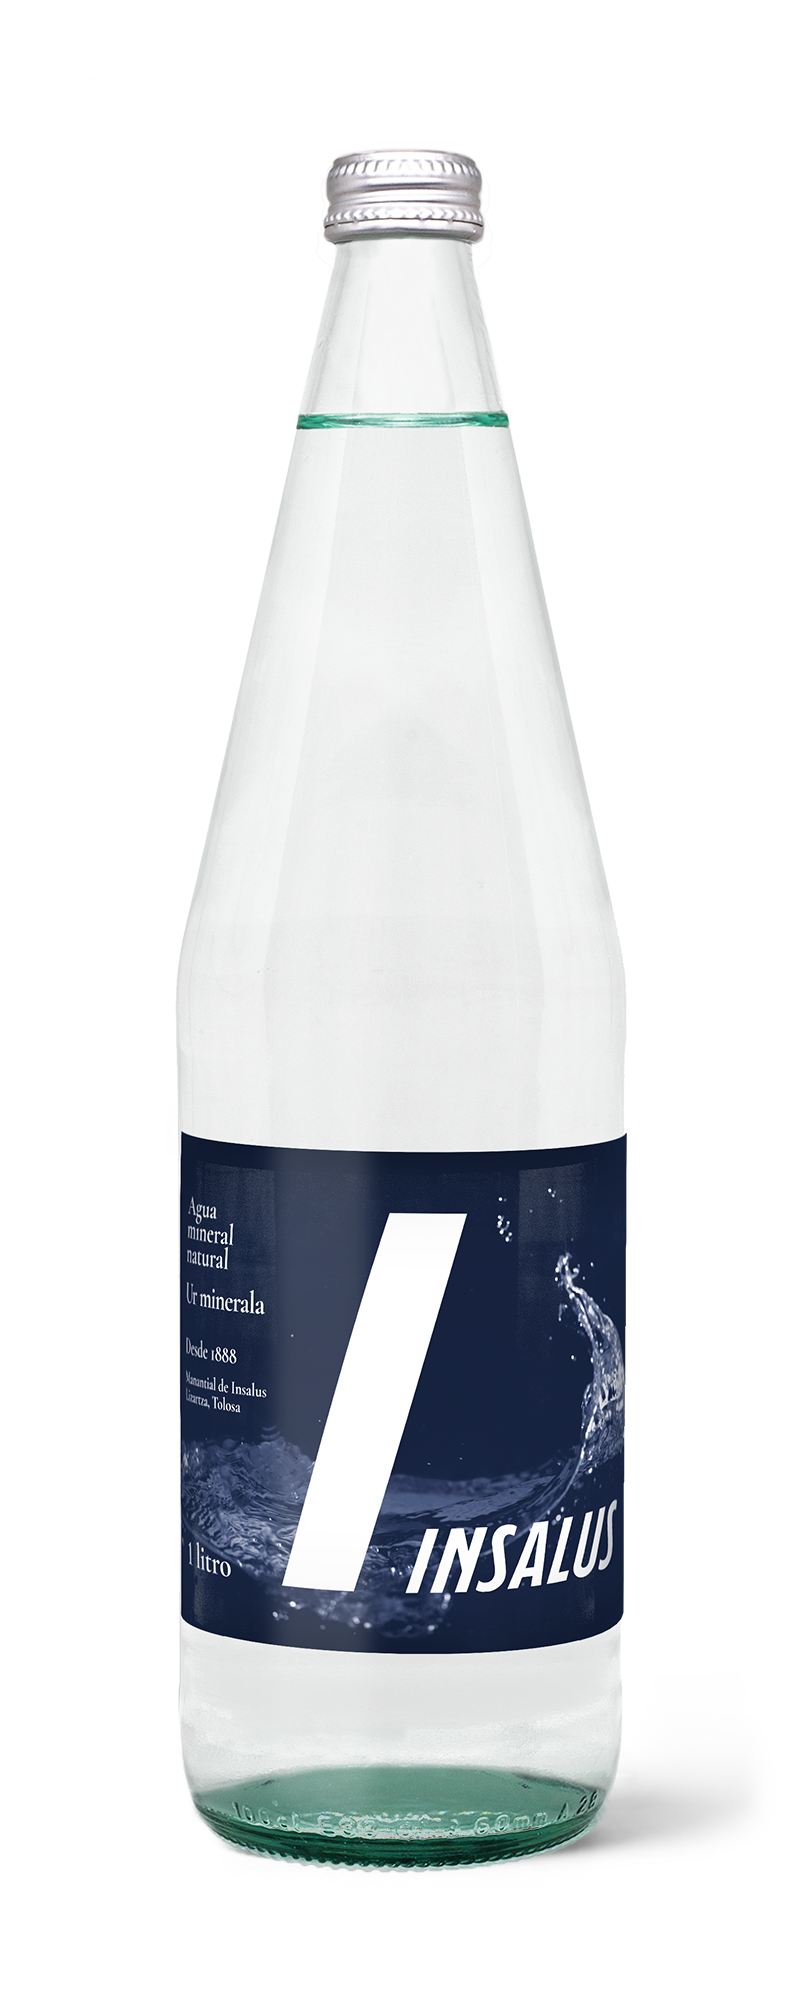 Botellas de 1'5 litros de Agua Monsalus – Aigua Viva Valencia